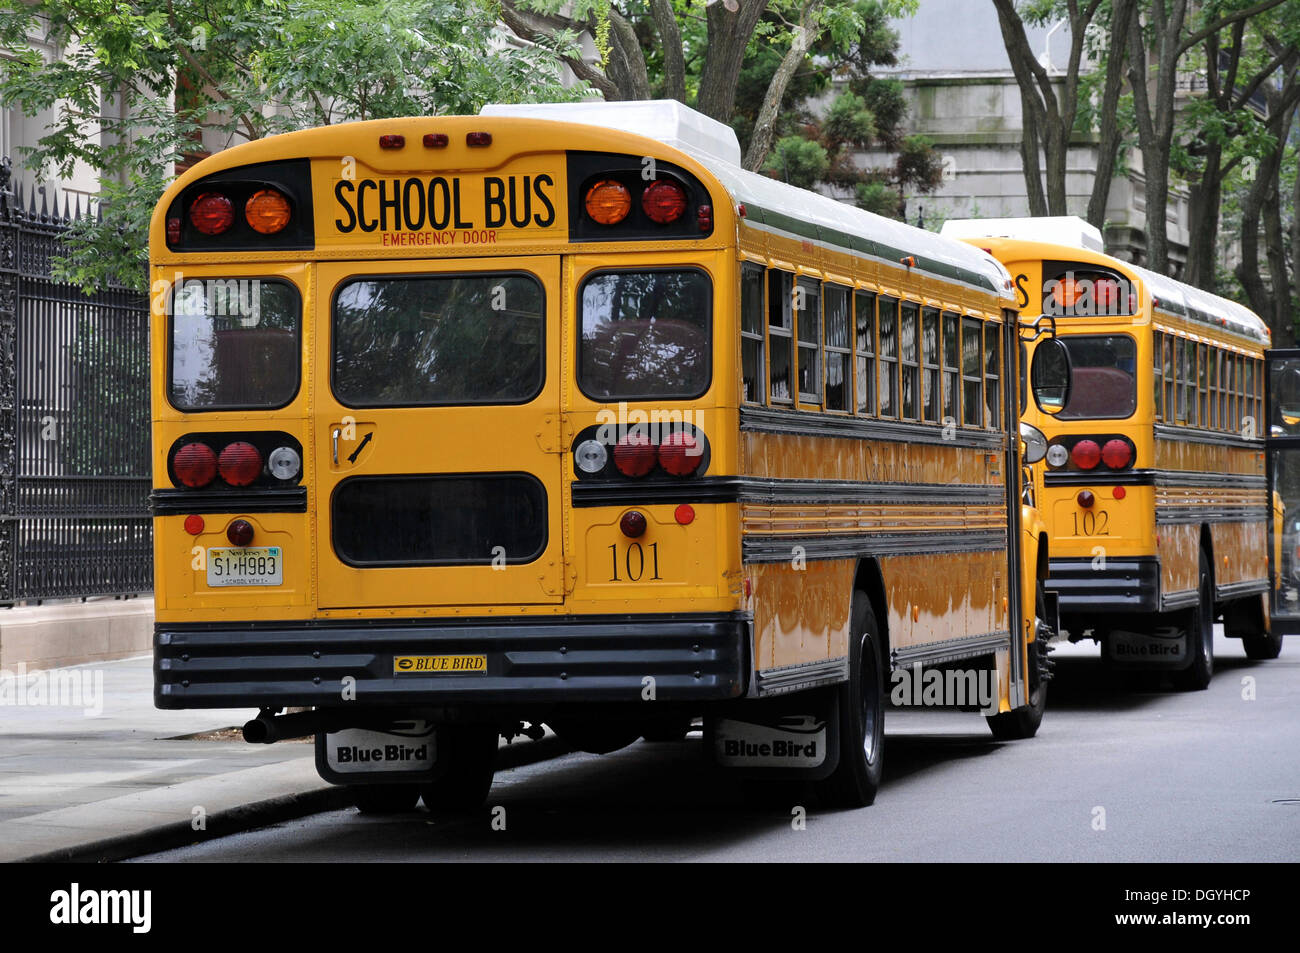 Autobus scolaire jaune, de l'Upper East side, new york city, New York, USA, united states, Amérique du Nord Banque D'Images